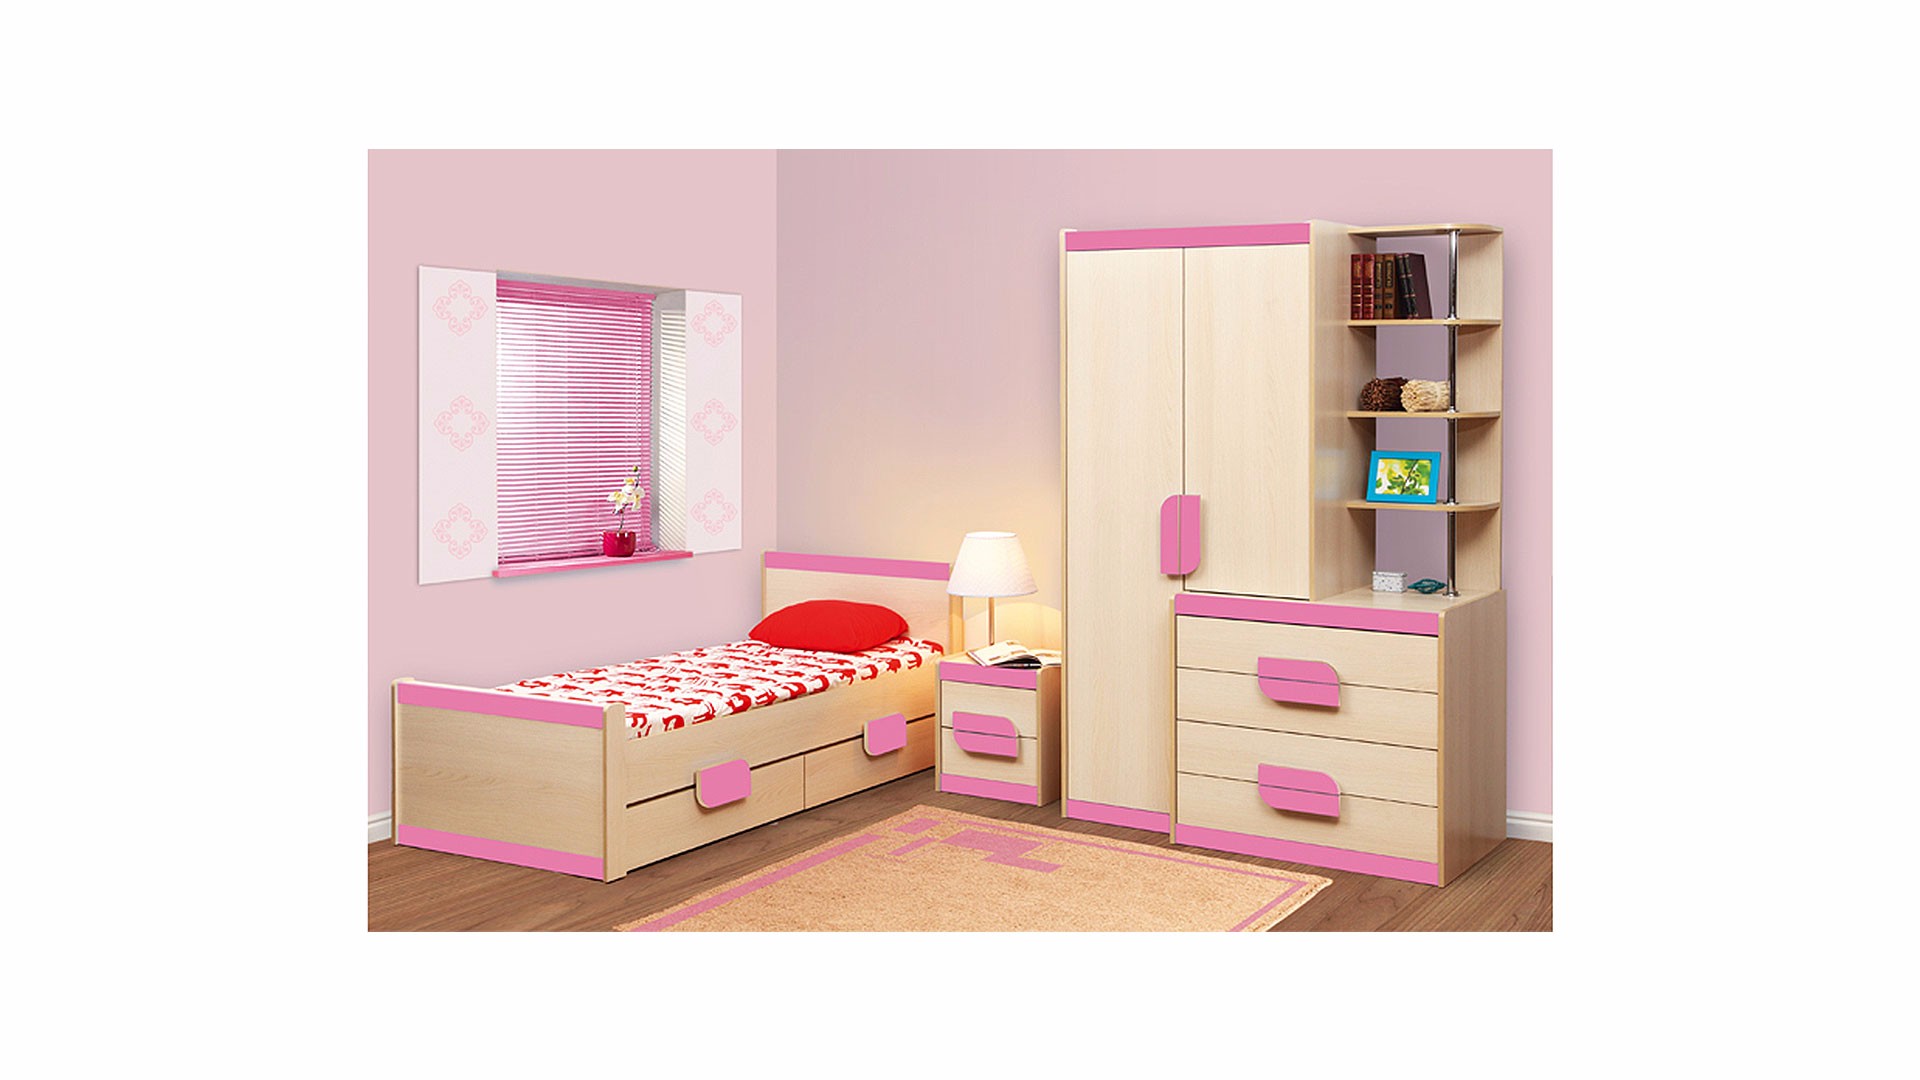 Мебель комплект 2 купить. Шкаф комбинированный лайф - 1. Мебель для девочки в комнату. Мебель для детской комнаты девочке. Детские спальни мебель.